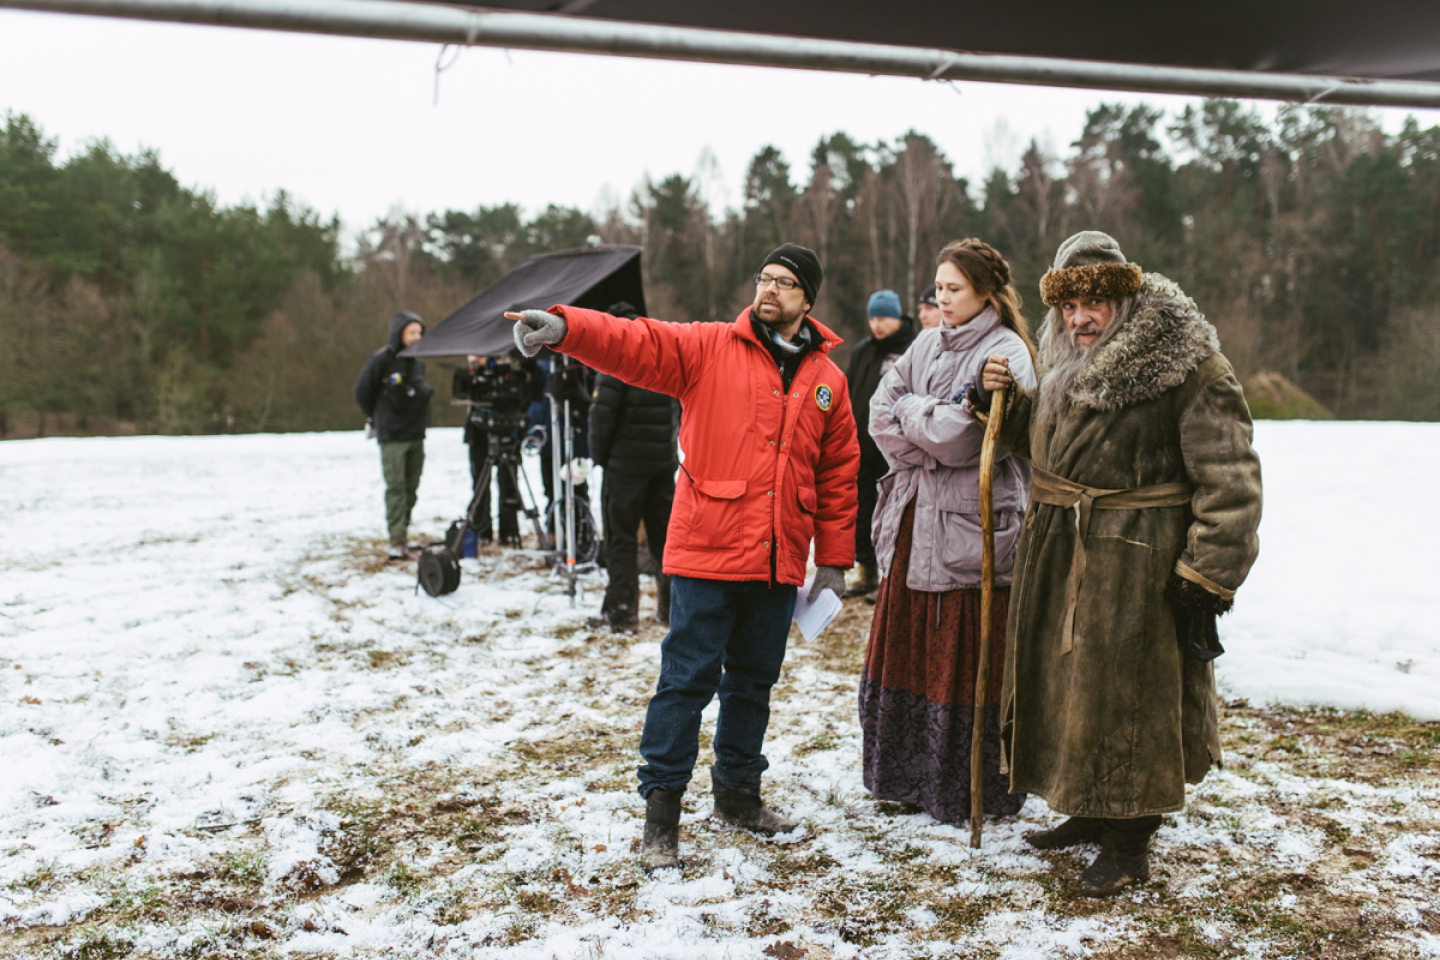 カメラ機材を用意して冬の屋外で撮影を行う様子。大きな外套を身にまとった 2 人の役者の横で、何かを指さしている映画スタッフ。 